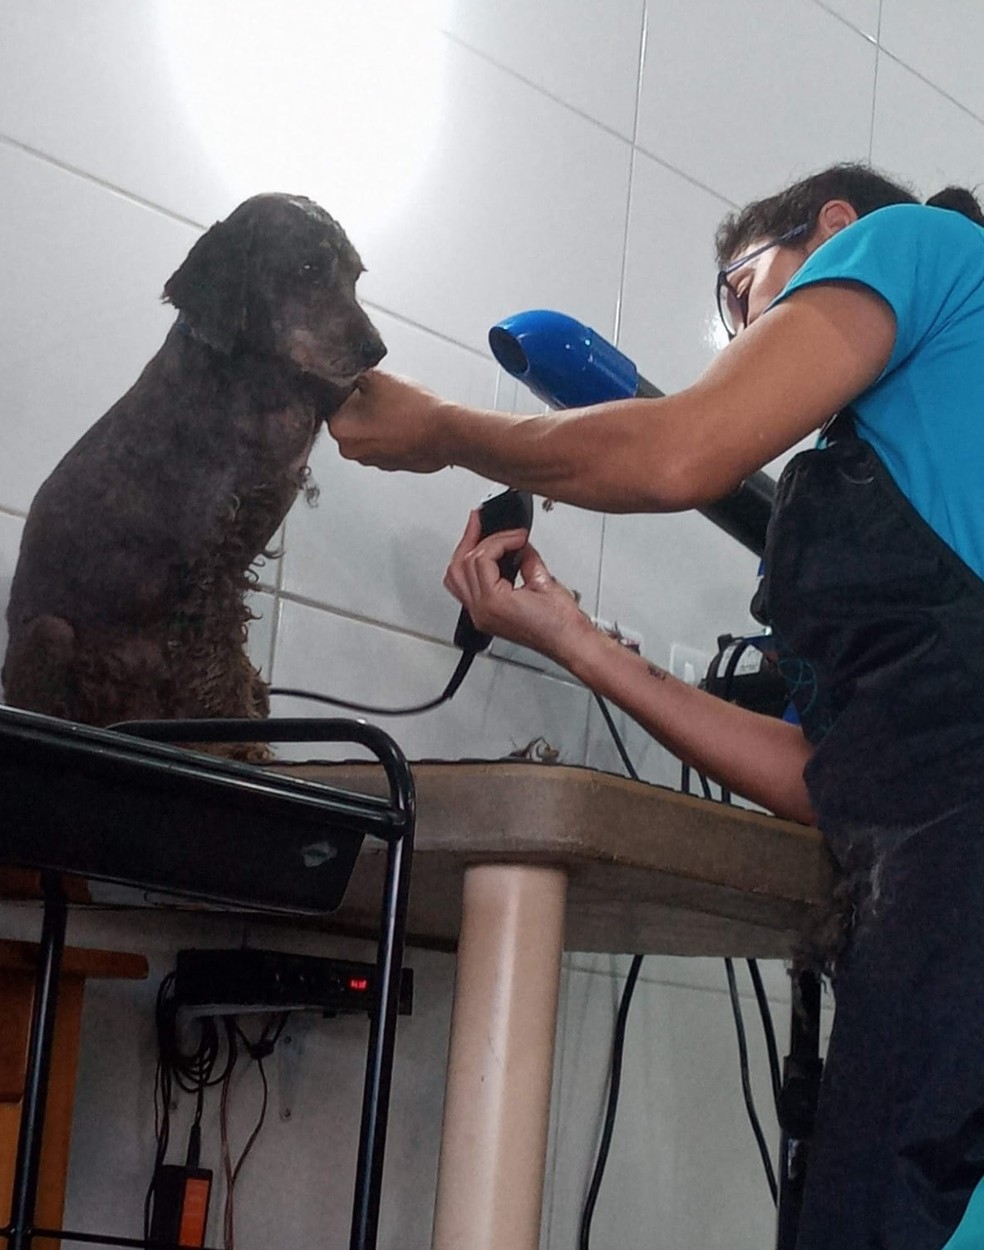 Valéria tosou a poodle após reencontrá-la  — Foto: Valéria de Moraes Oliveira/Arquivo pessoal